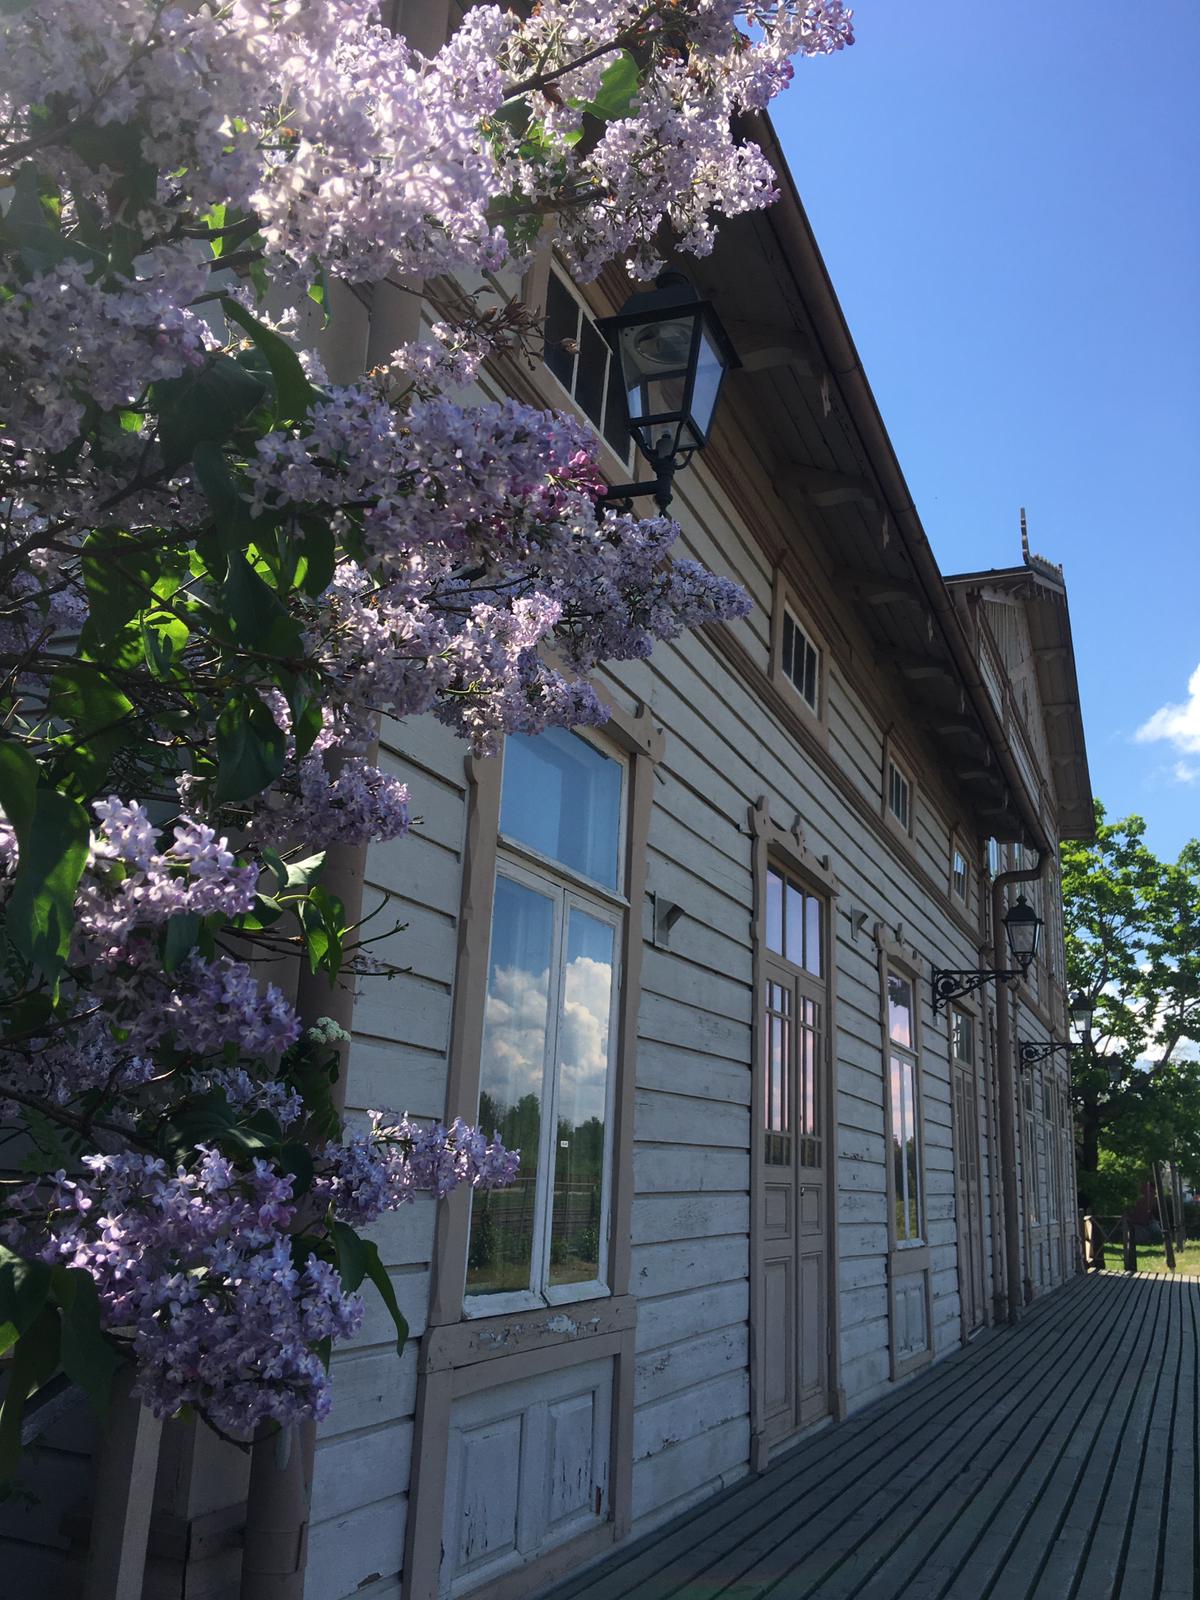 Vaalea puurakenteinen rautatieasemarakennus, jonka edessä kukkivat violetit syreenipensaat